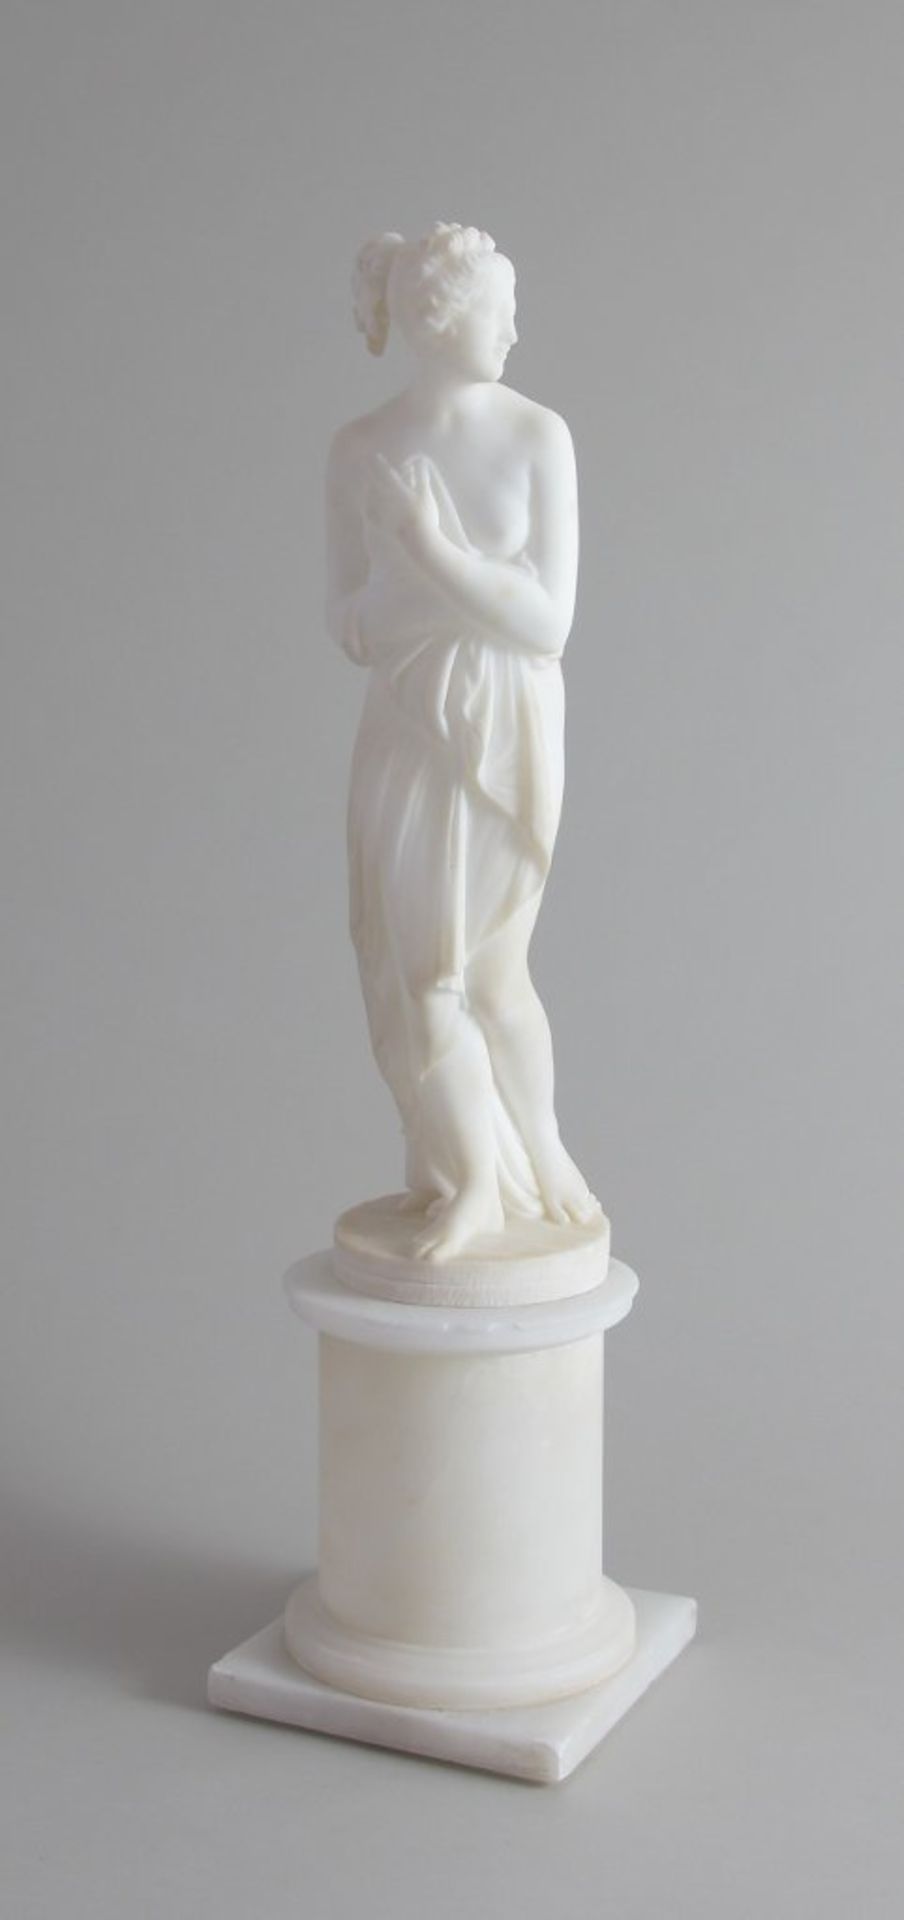 Stehender weiblicher Akt nach antikem Vorbild. Alabasterfigur auf Plinthensockel. Italien, 19. Jh. H